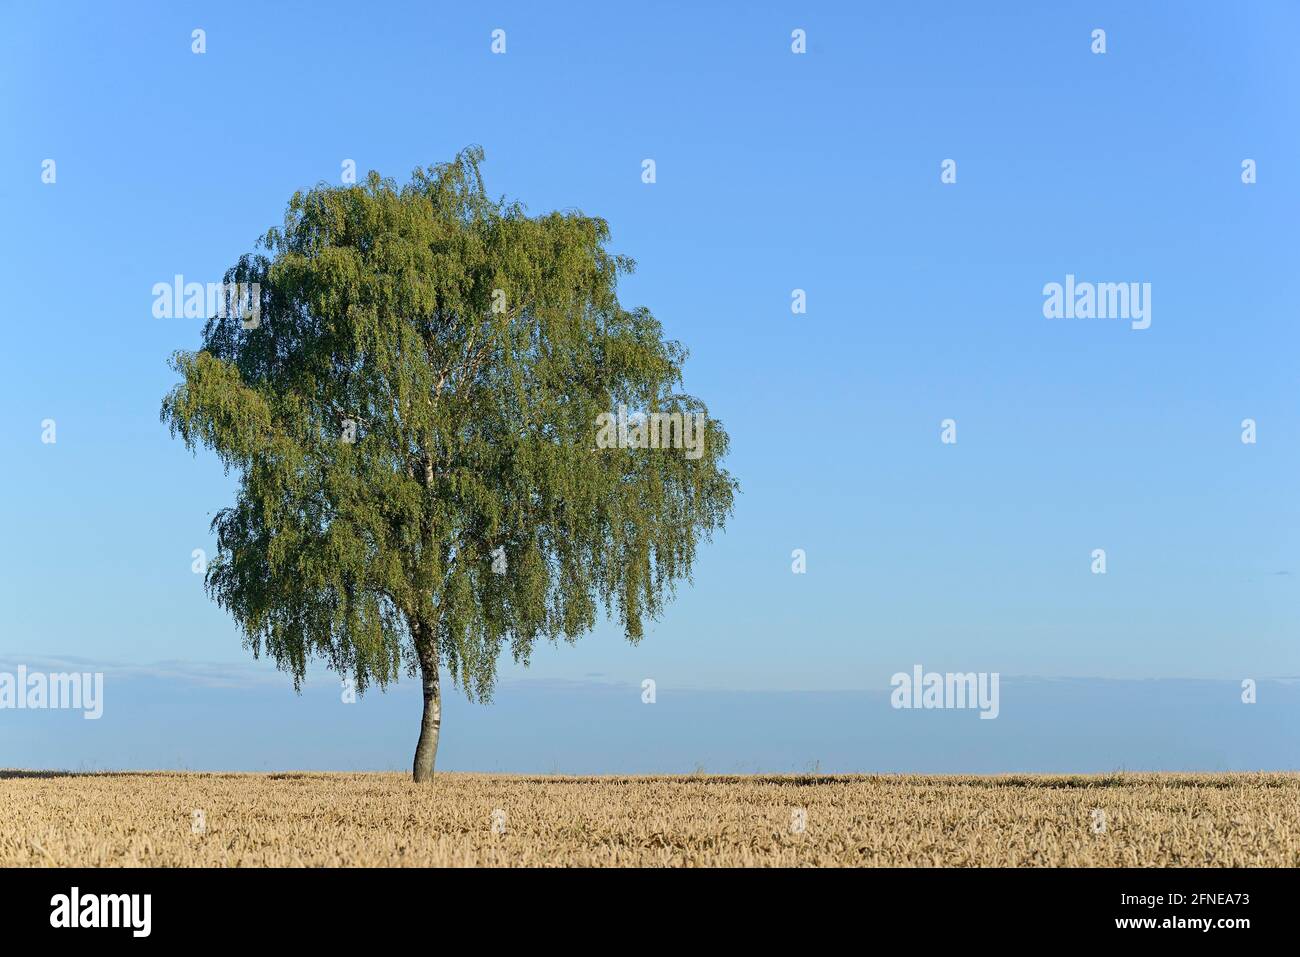 Abedul (Betula), árbol solitario en el campo de grano, cielo azul, Renania del Norte-Westfalia, Alemania Foto de stock